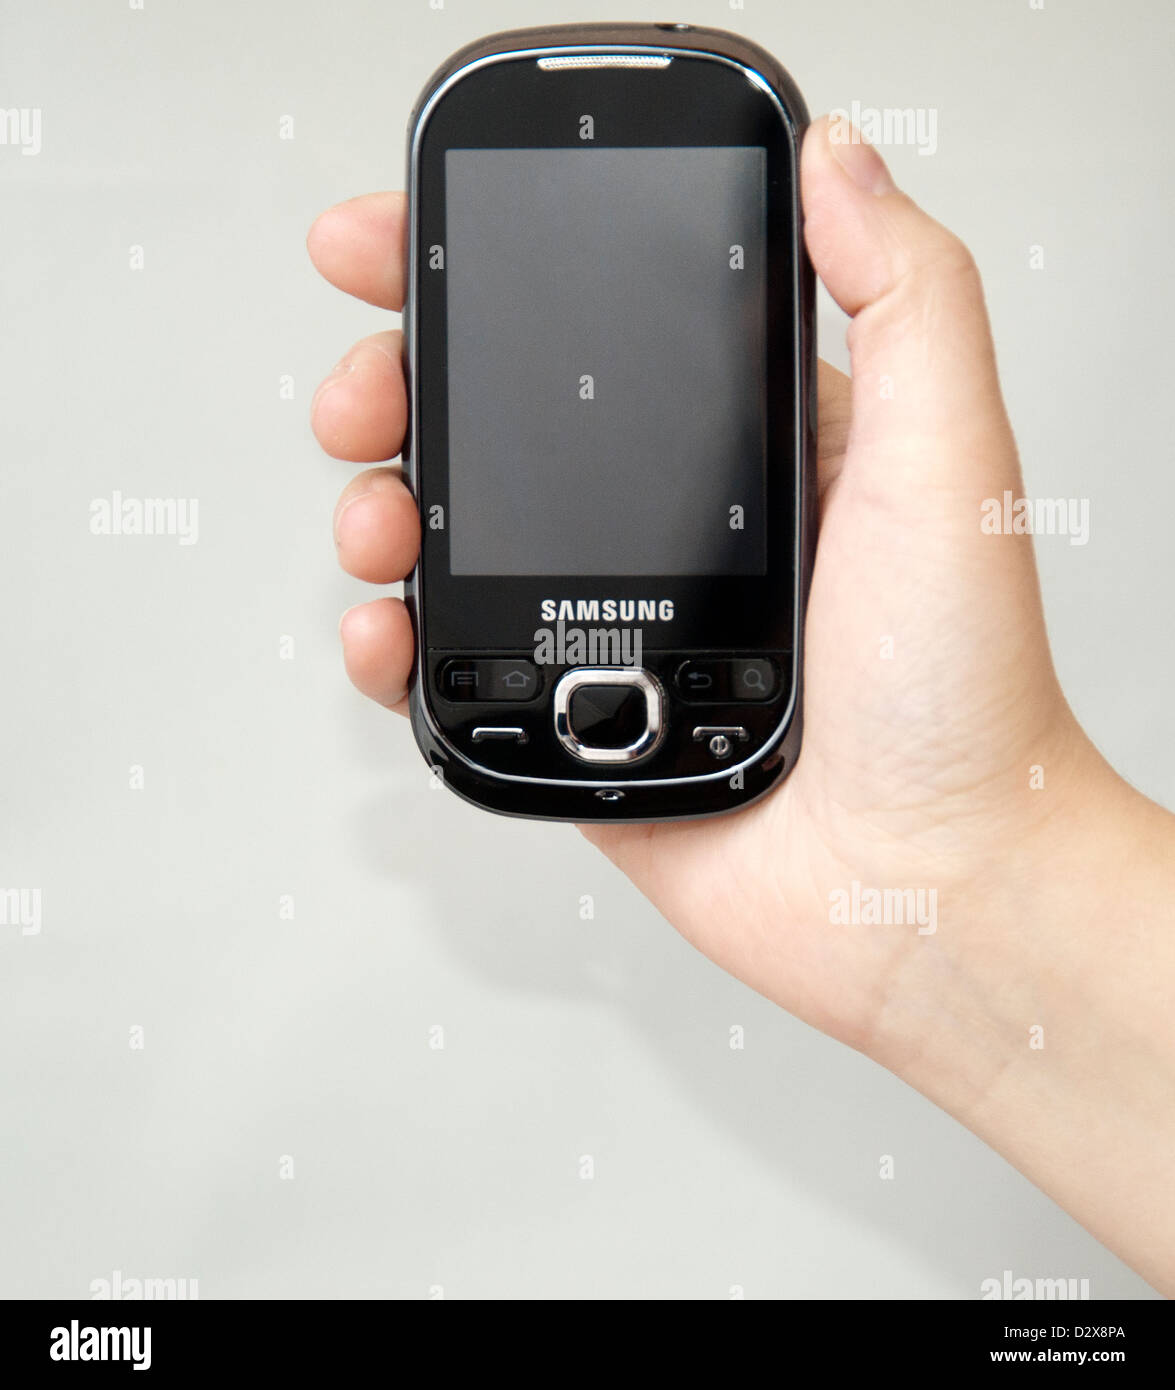 Samsung téléphone cellulaire dans la main Banque D'Images